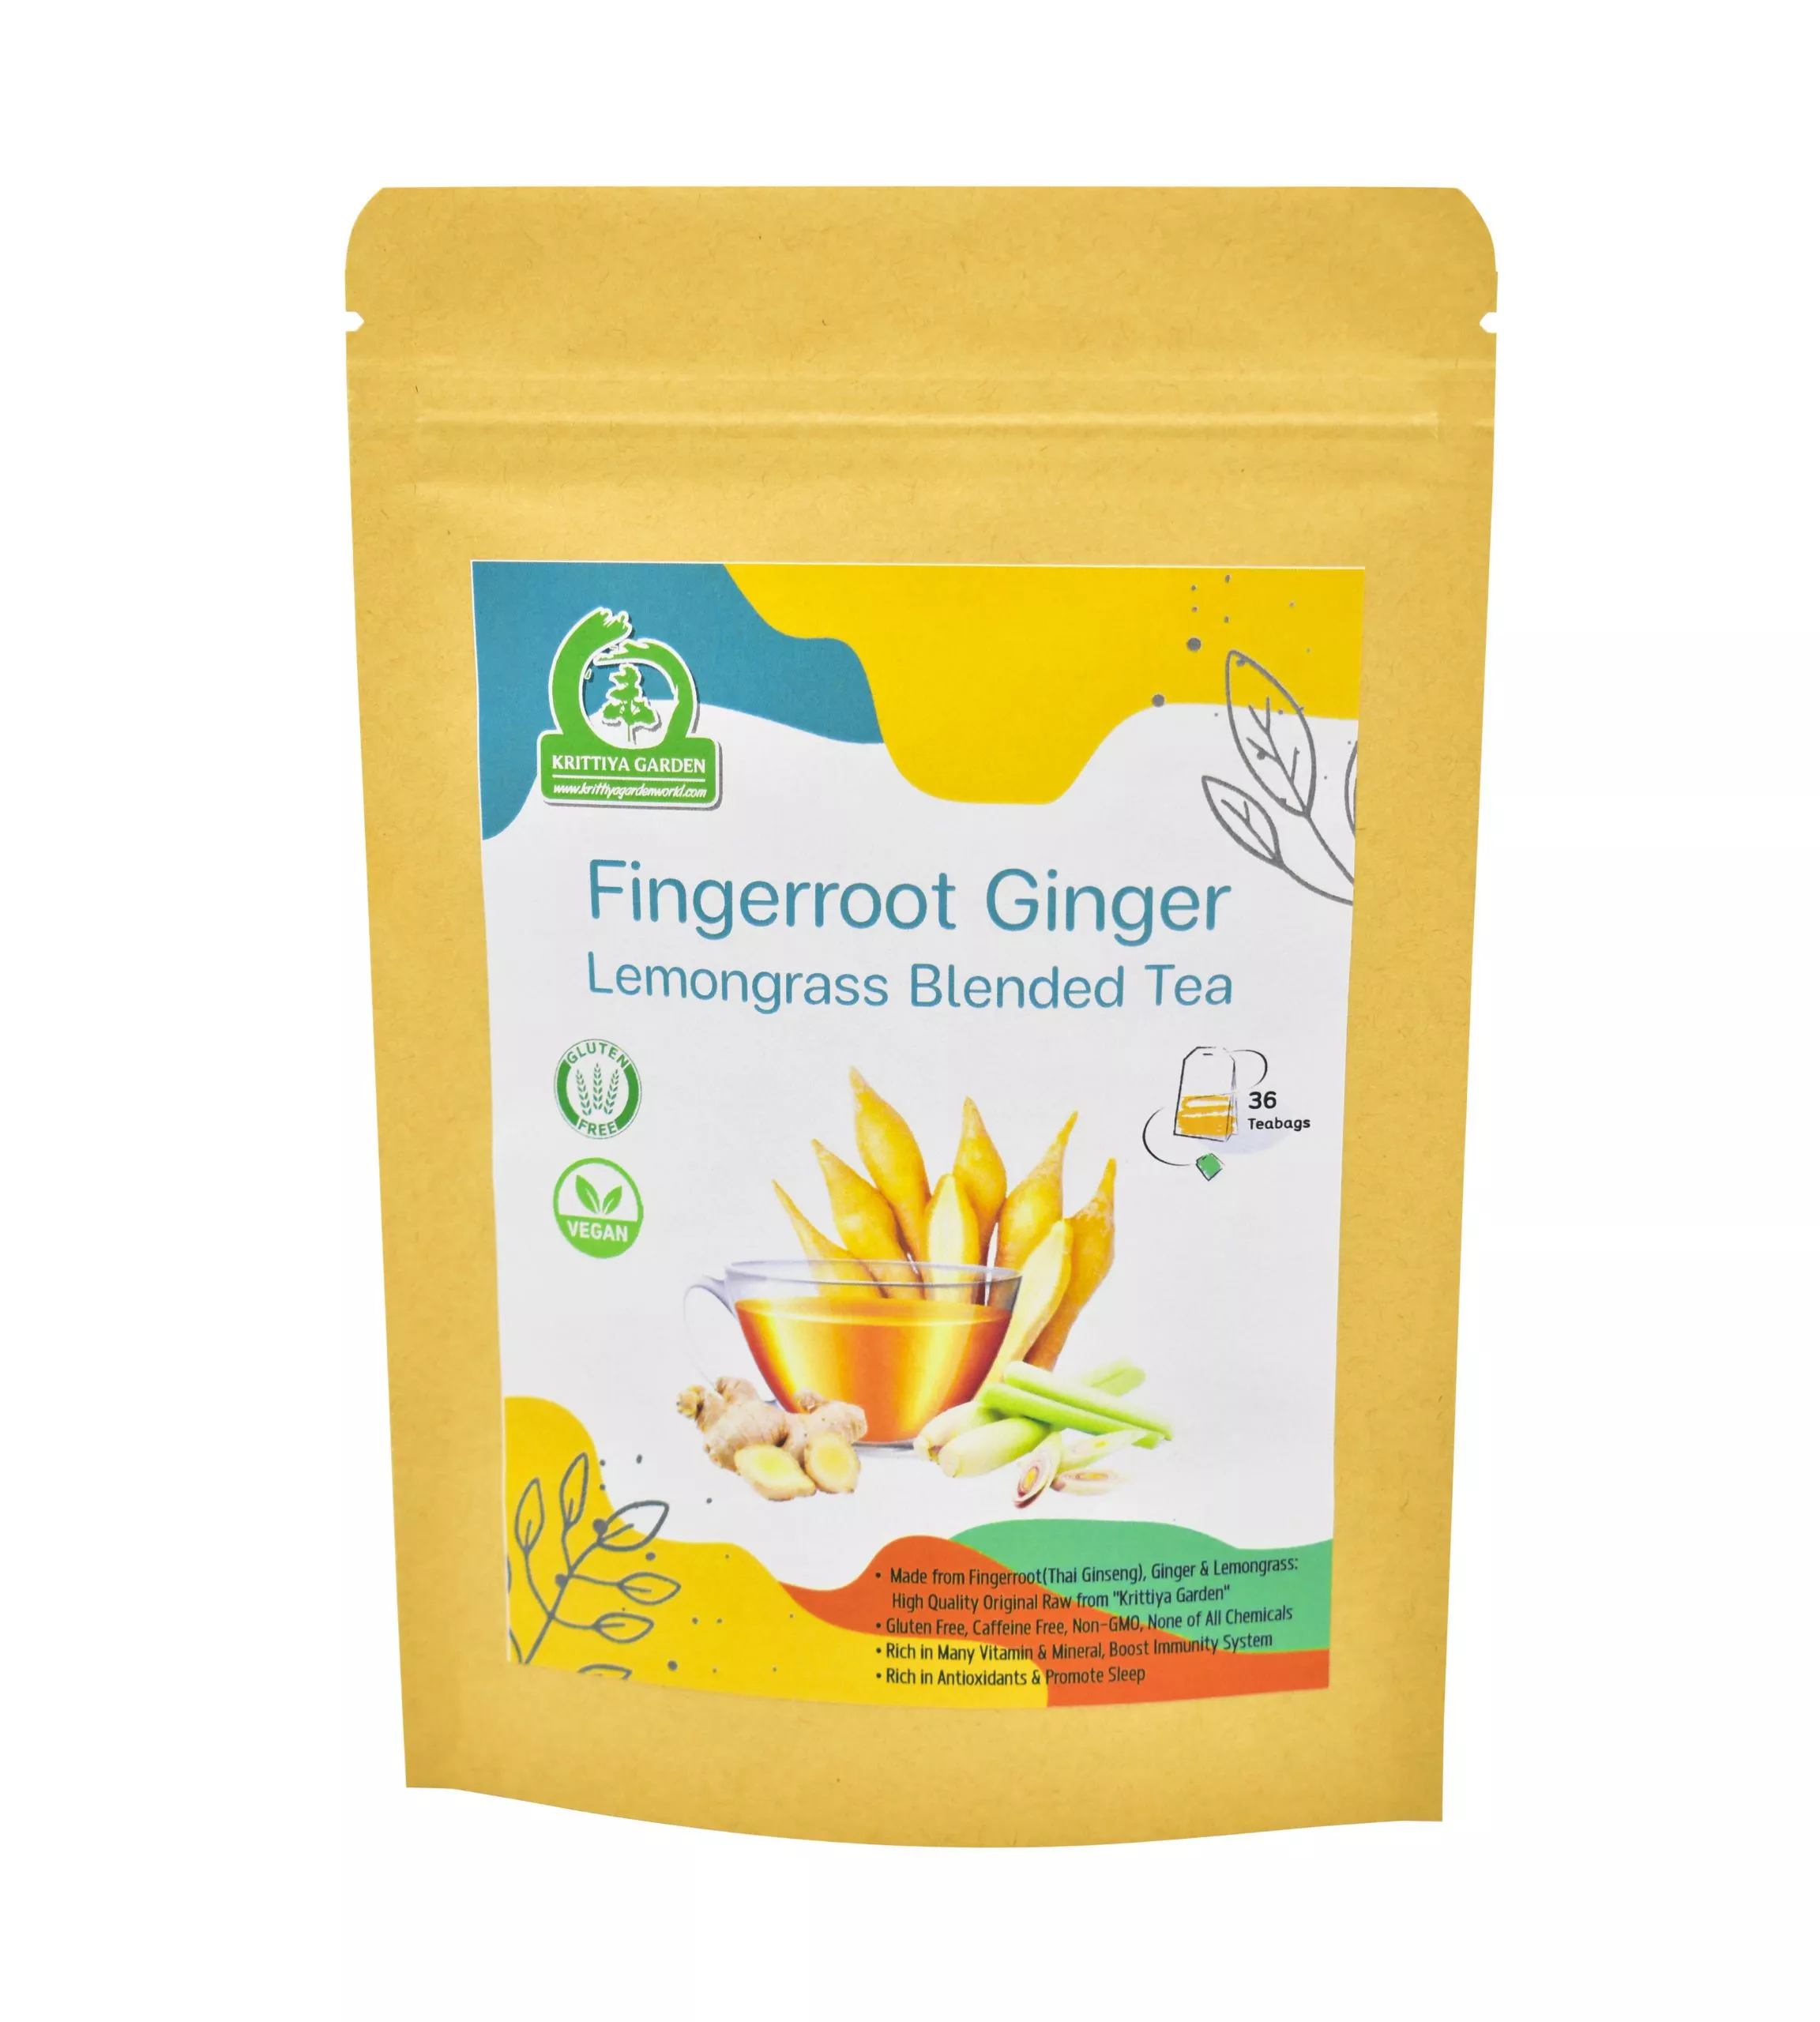 Fingerroot Ginger Lemongrass Blended Tea Front